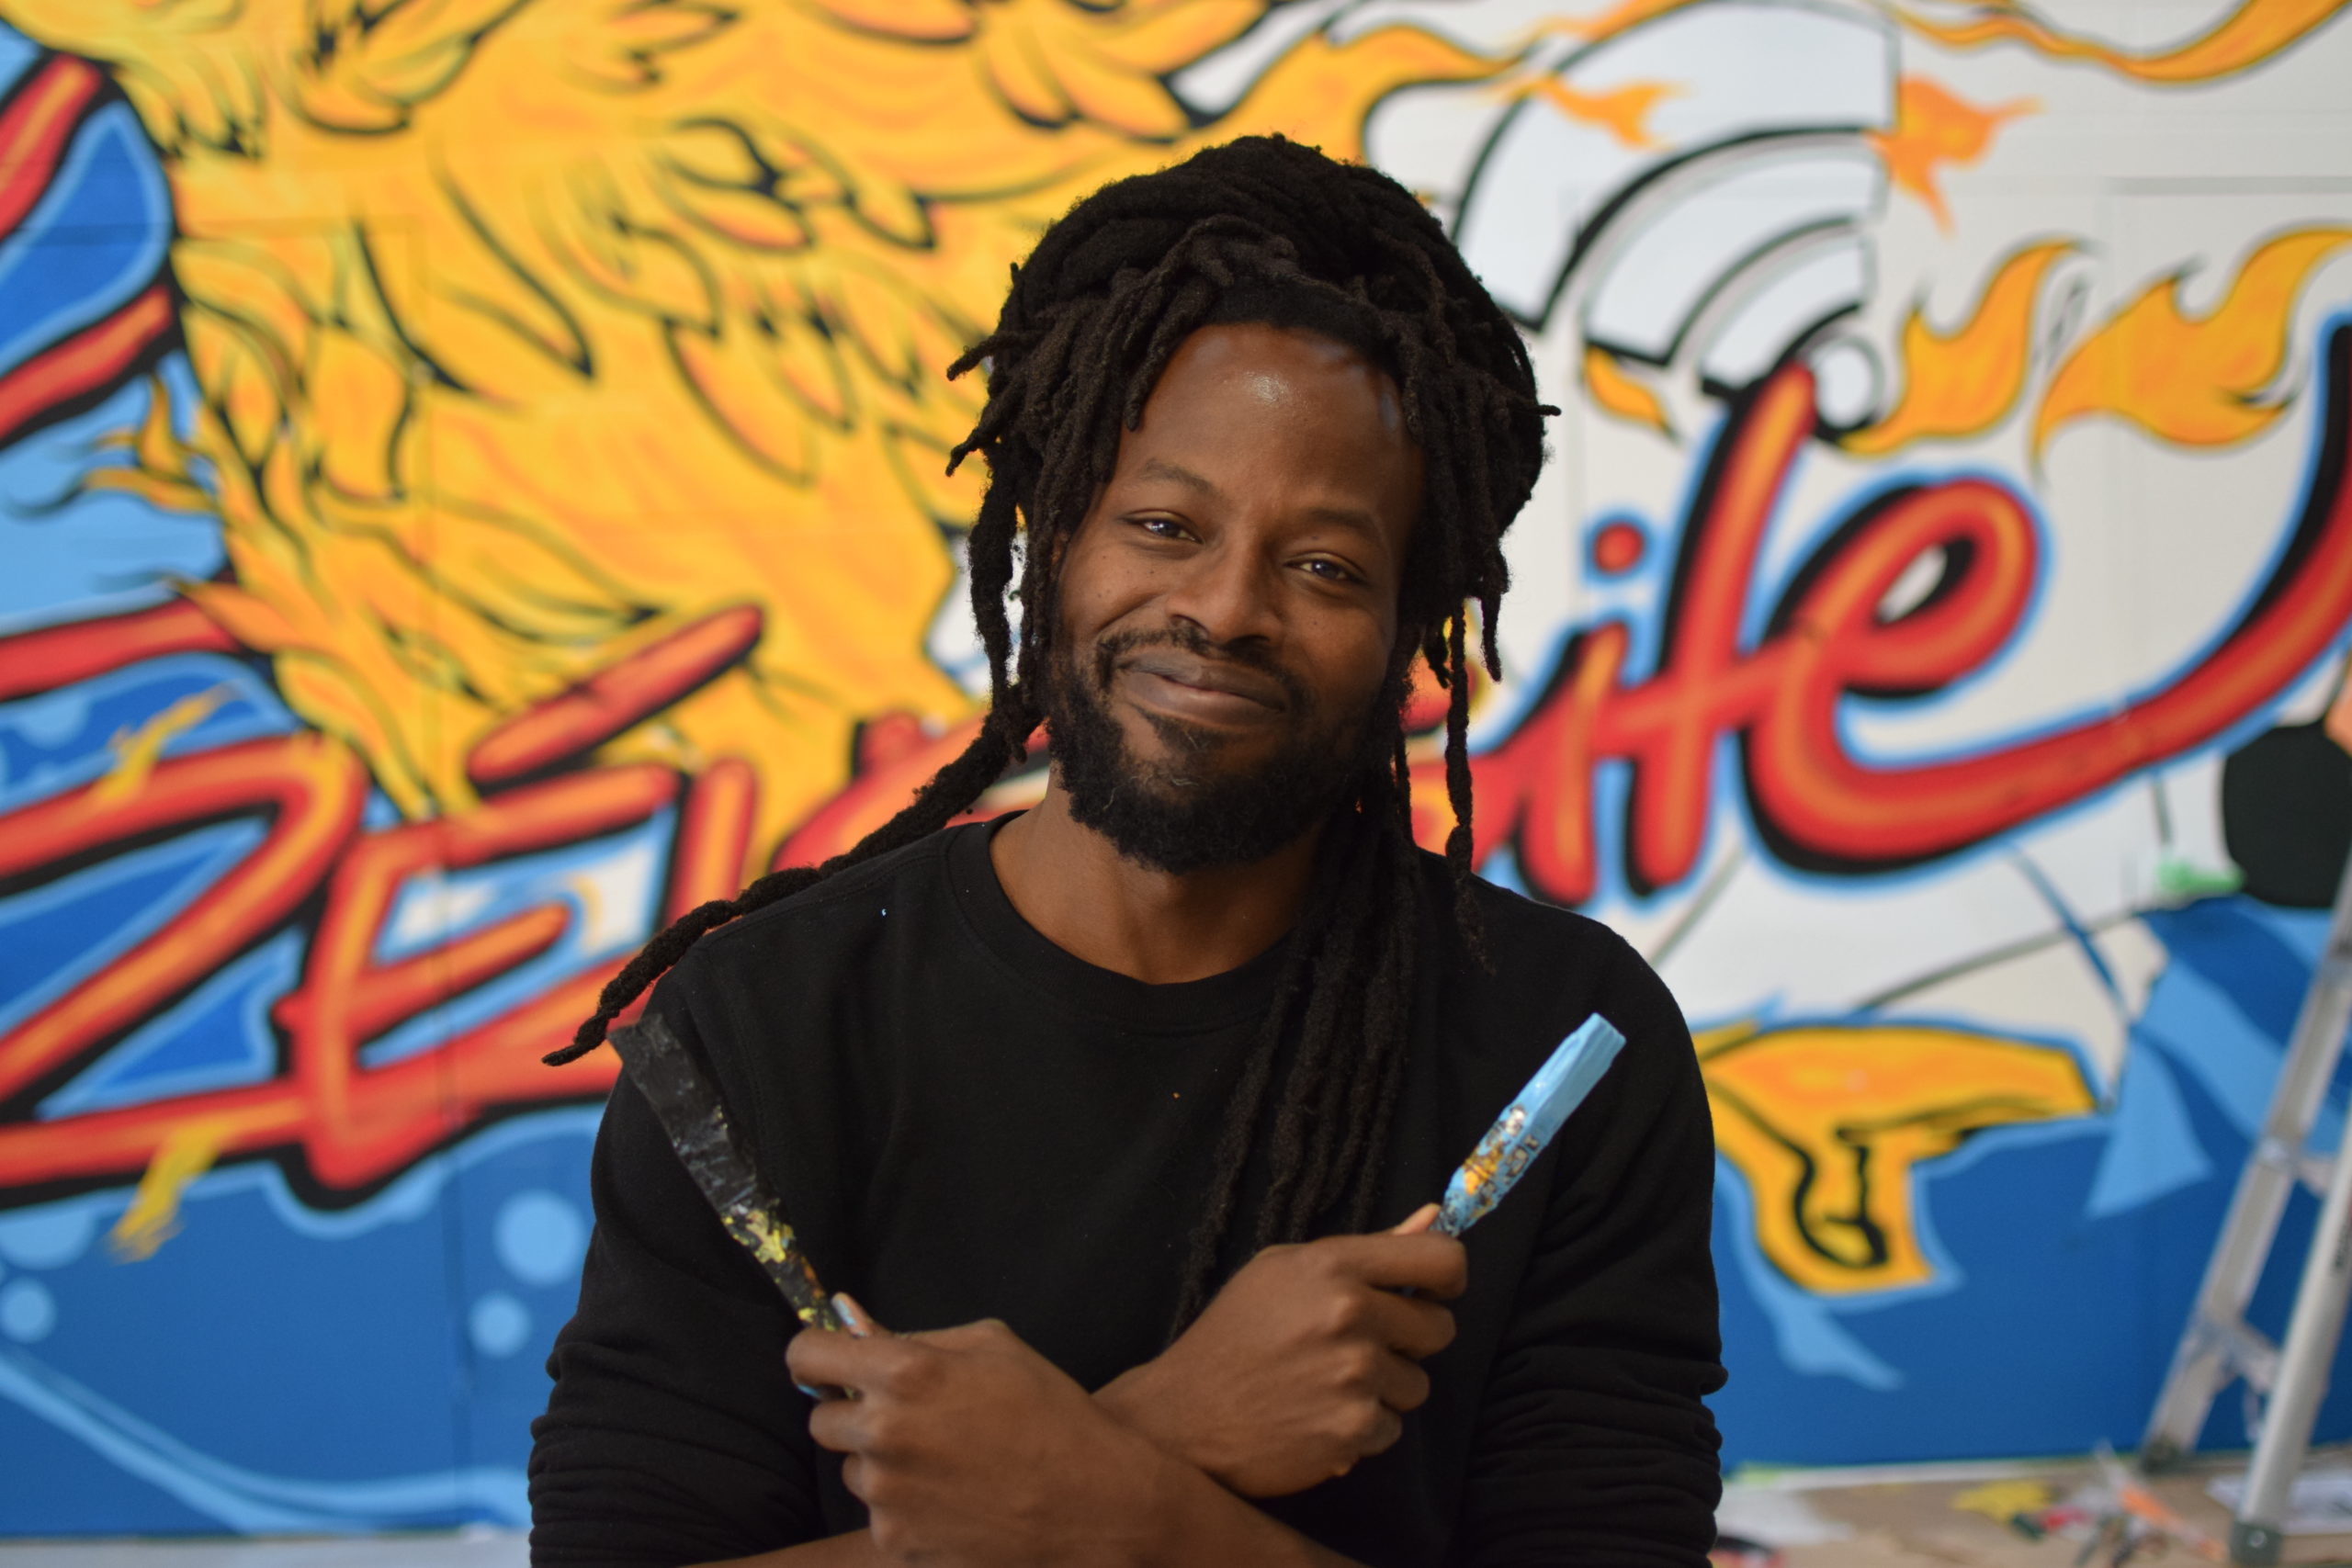 A Black man smiles in front of a colourful mural, holding two paintbrushes in an X across his chest. / Un homme Noir sourit devant une murale colorée en entrecroisant deux pinceaux devant son torse.